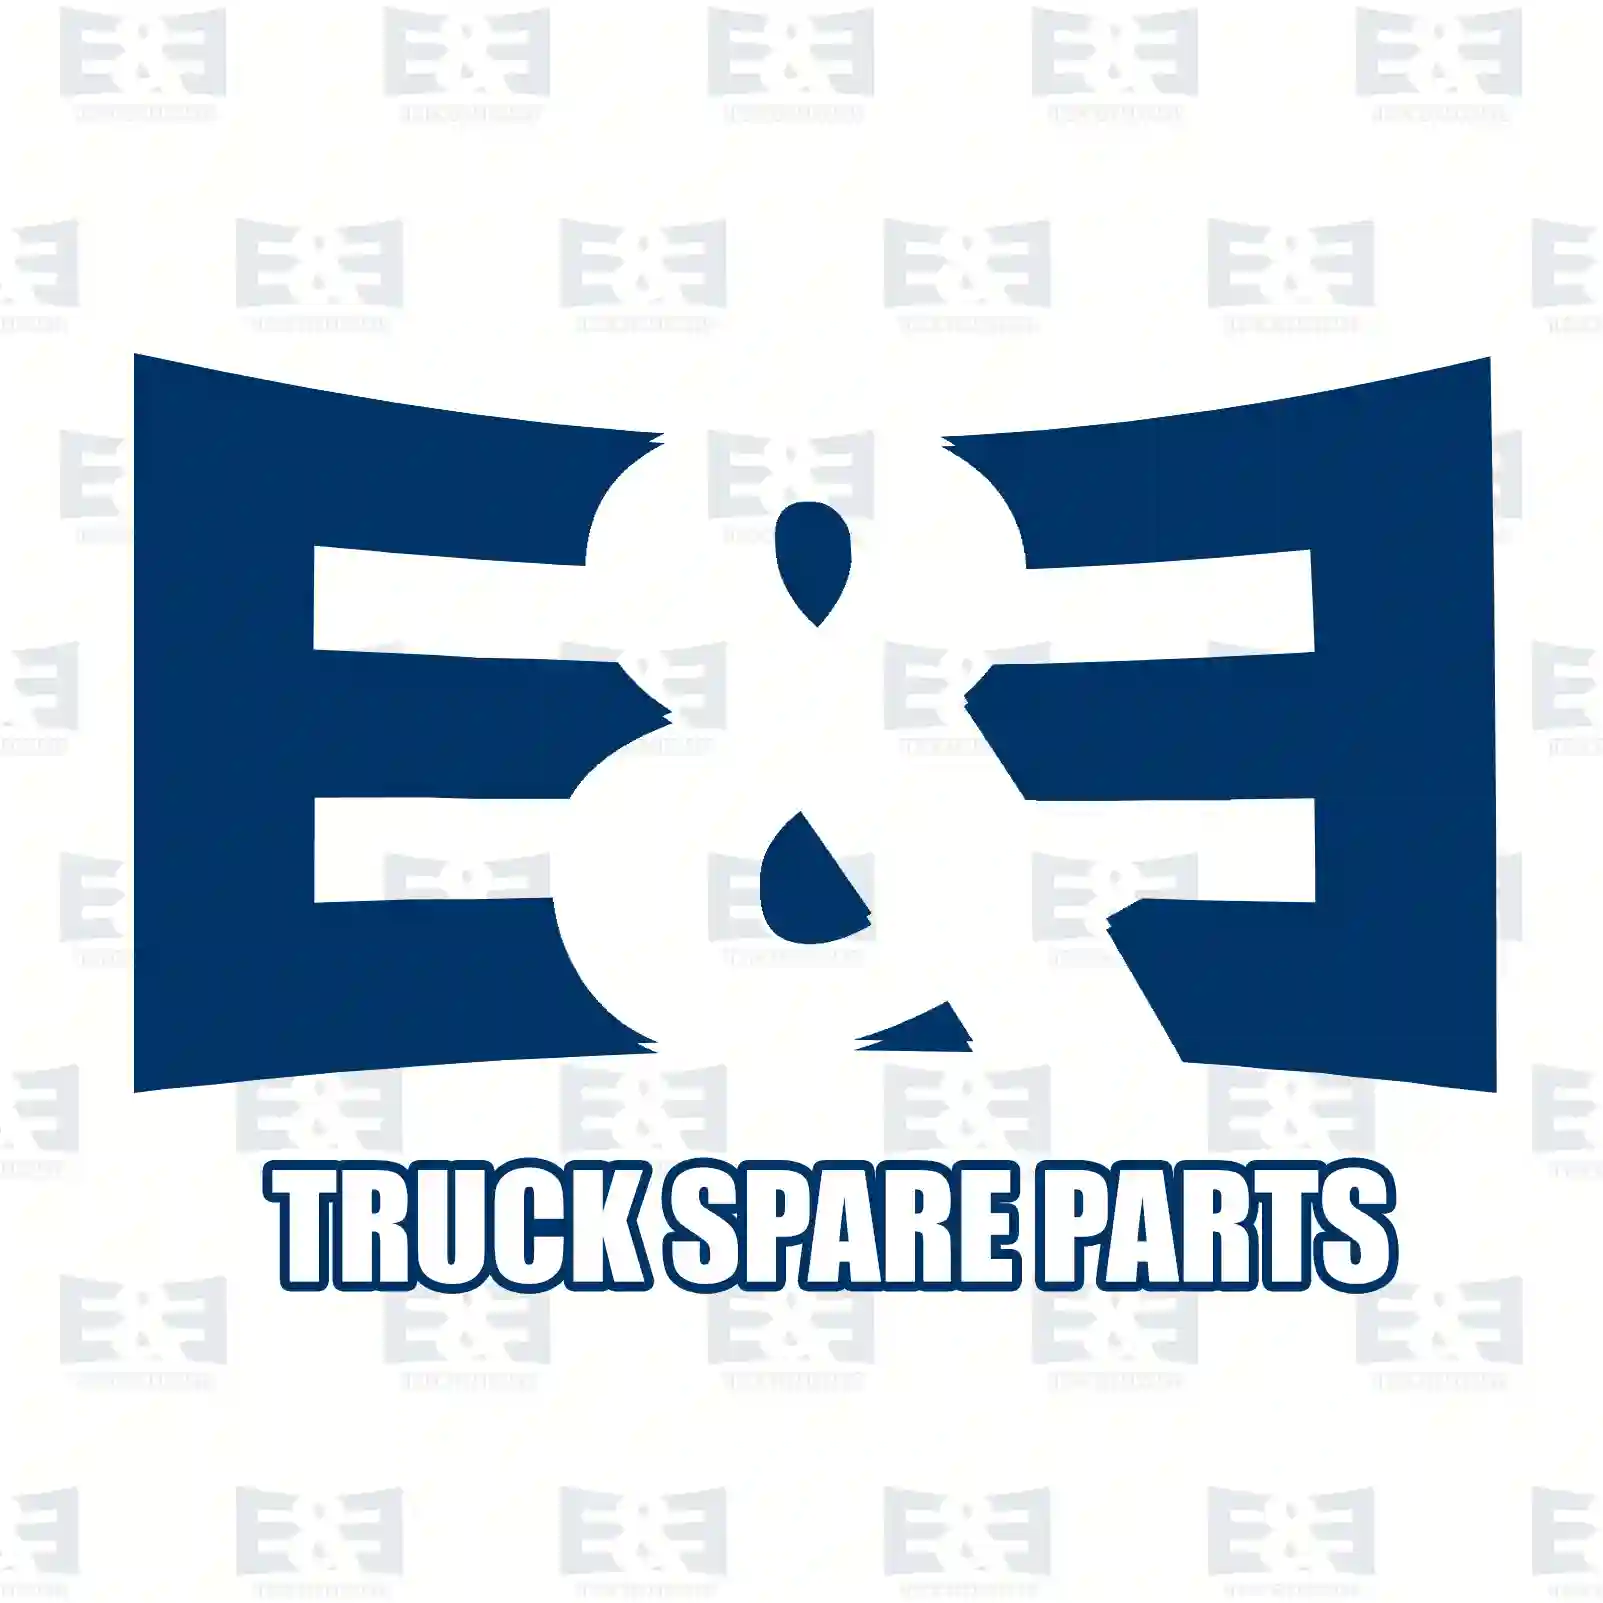 Cabin shock absorber, 2E2275074, 9603101455, 9603107755, 9613101755 ||  2E2275074 E&E Truck Spare Parts | Truck Spare Parts, Auotomotive Spare Parts Cabin shock absorber, 2E2275074, 9603101455, 9603107755, 9613101755 ||  2E2275074 E&E Truck Spare Parts | Truck Spare Parts, Auotomotive Spare Parts